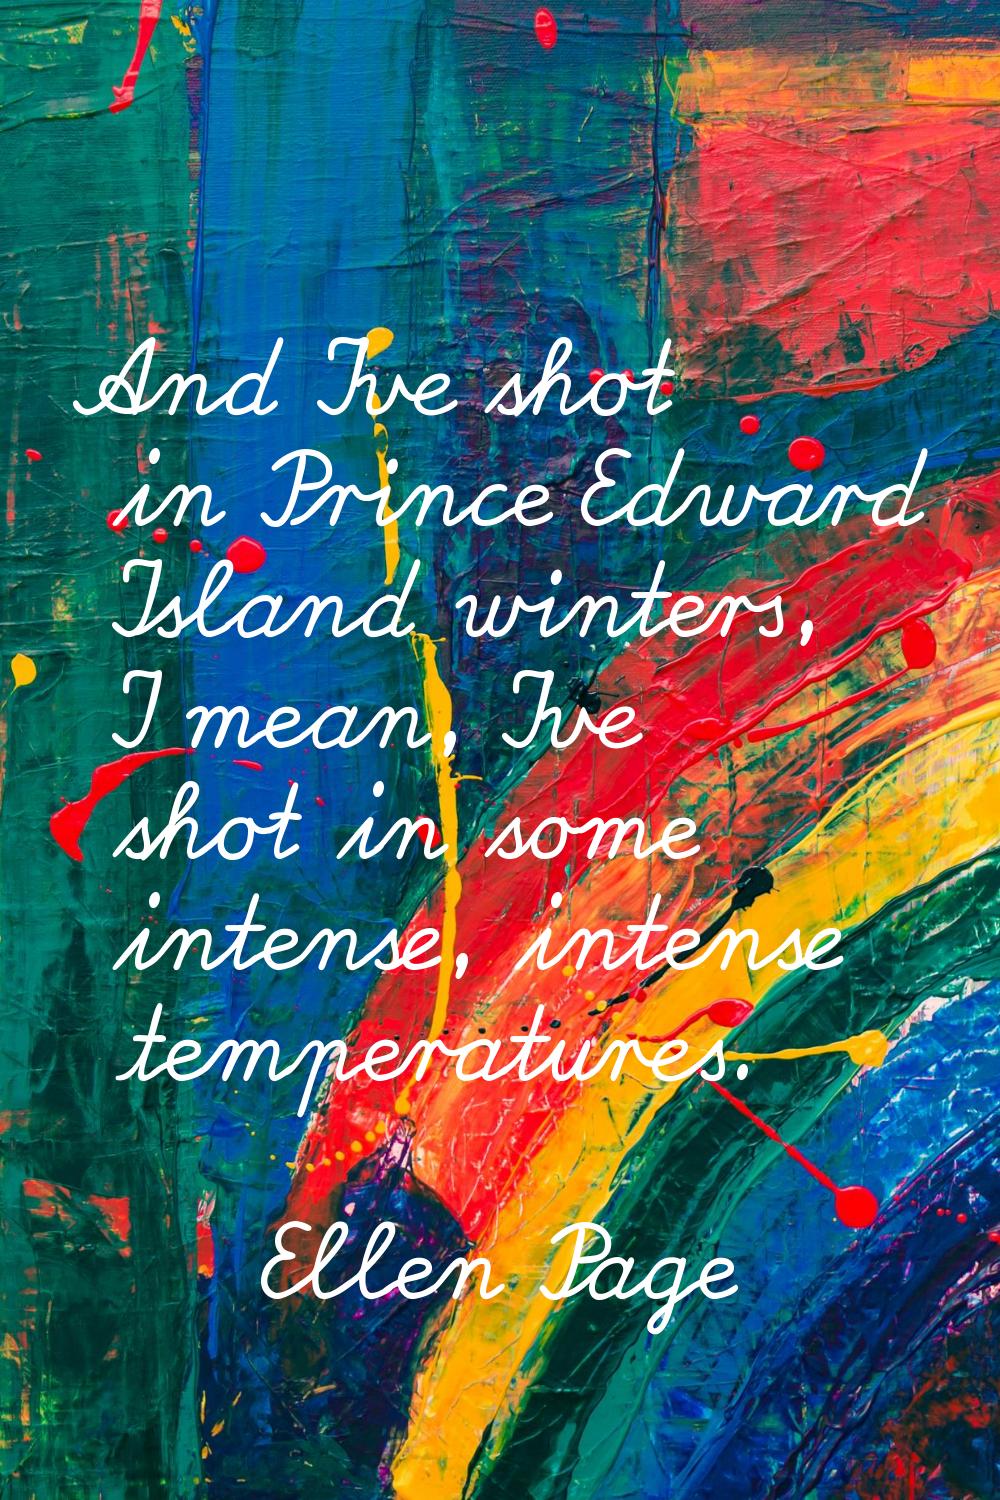 And I've shot in Prince Edward Island winters, I mean, I've shot in some intense, intense temperatu